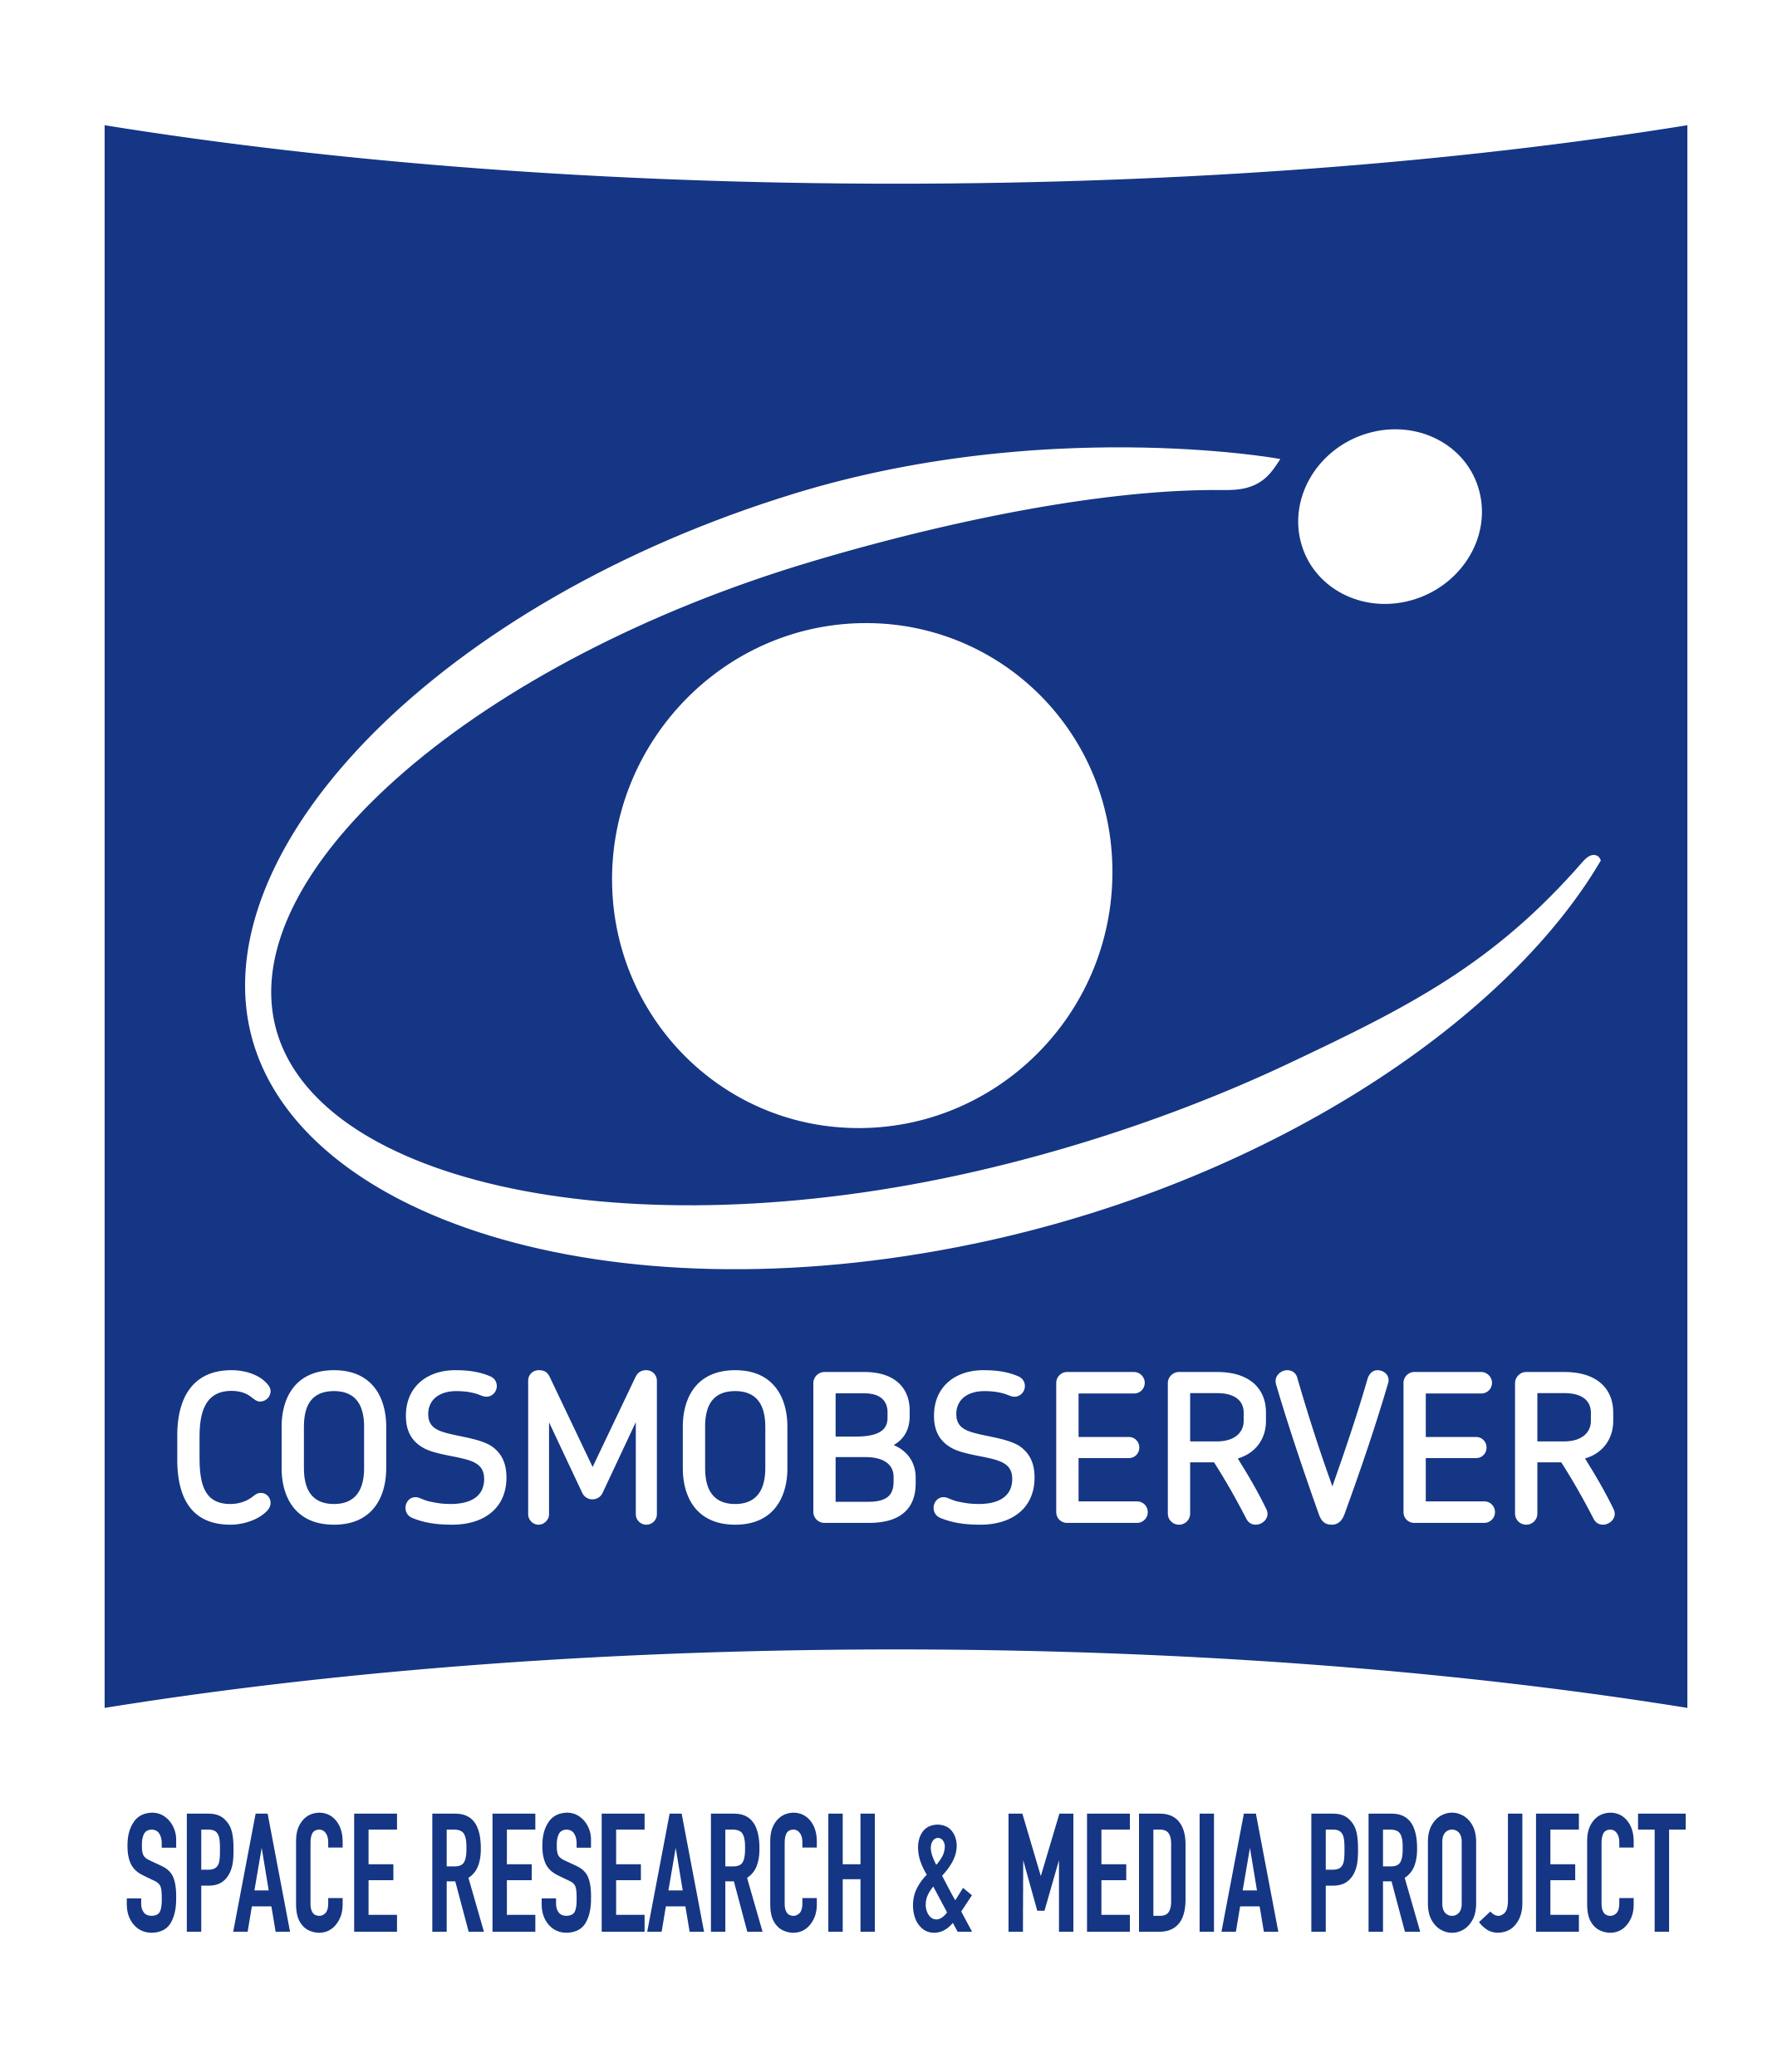 Divulgazione scientifica: On-line il nuovo sito di COSMOBSERVER